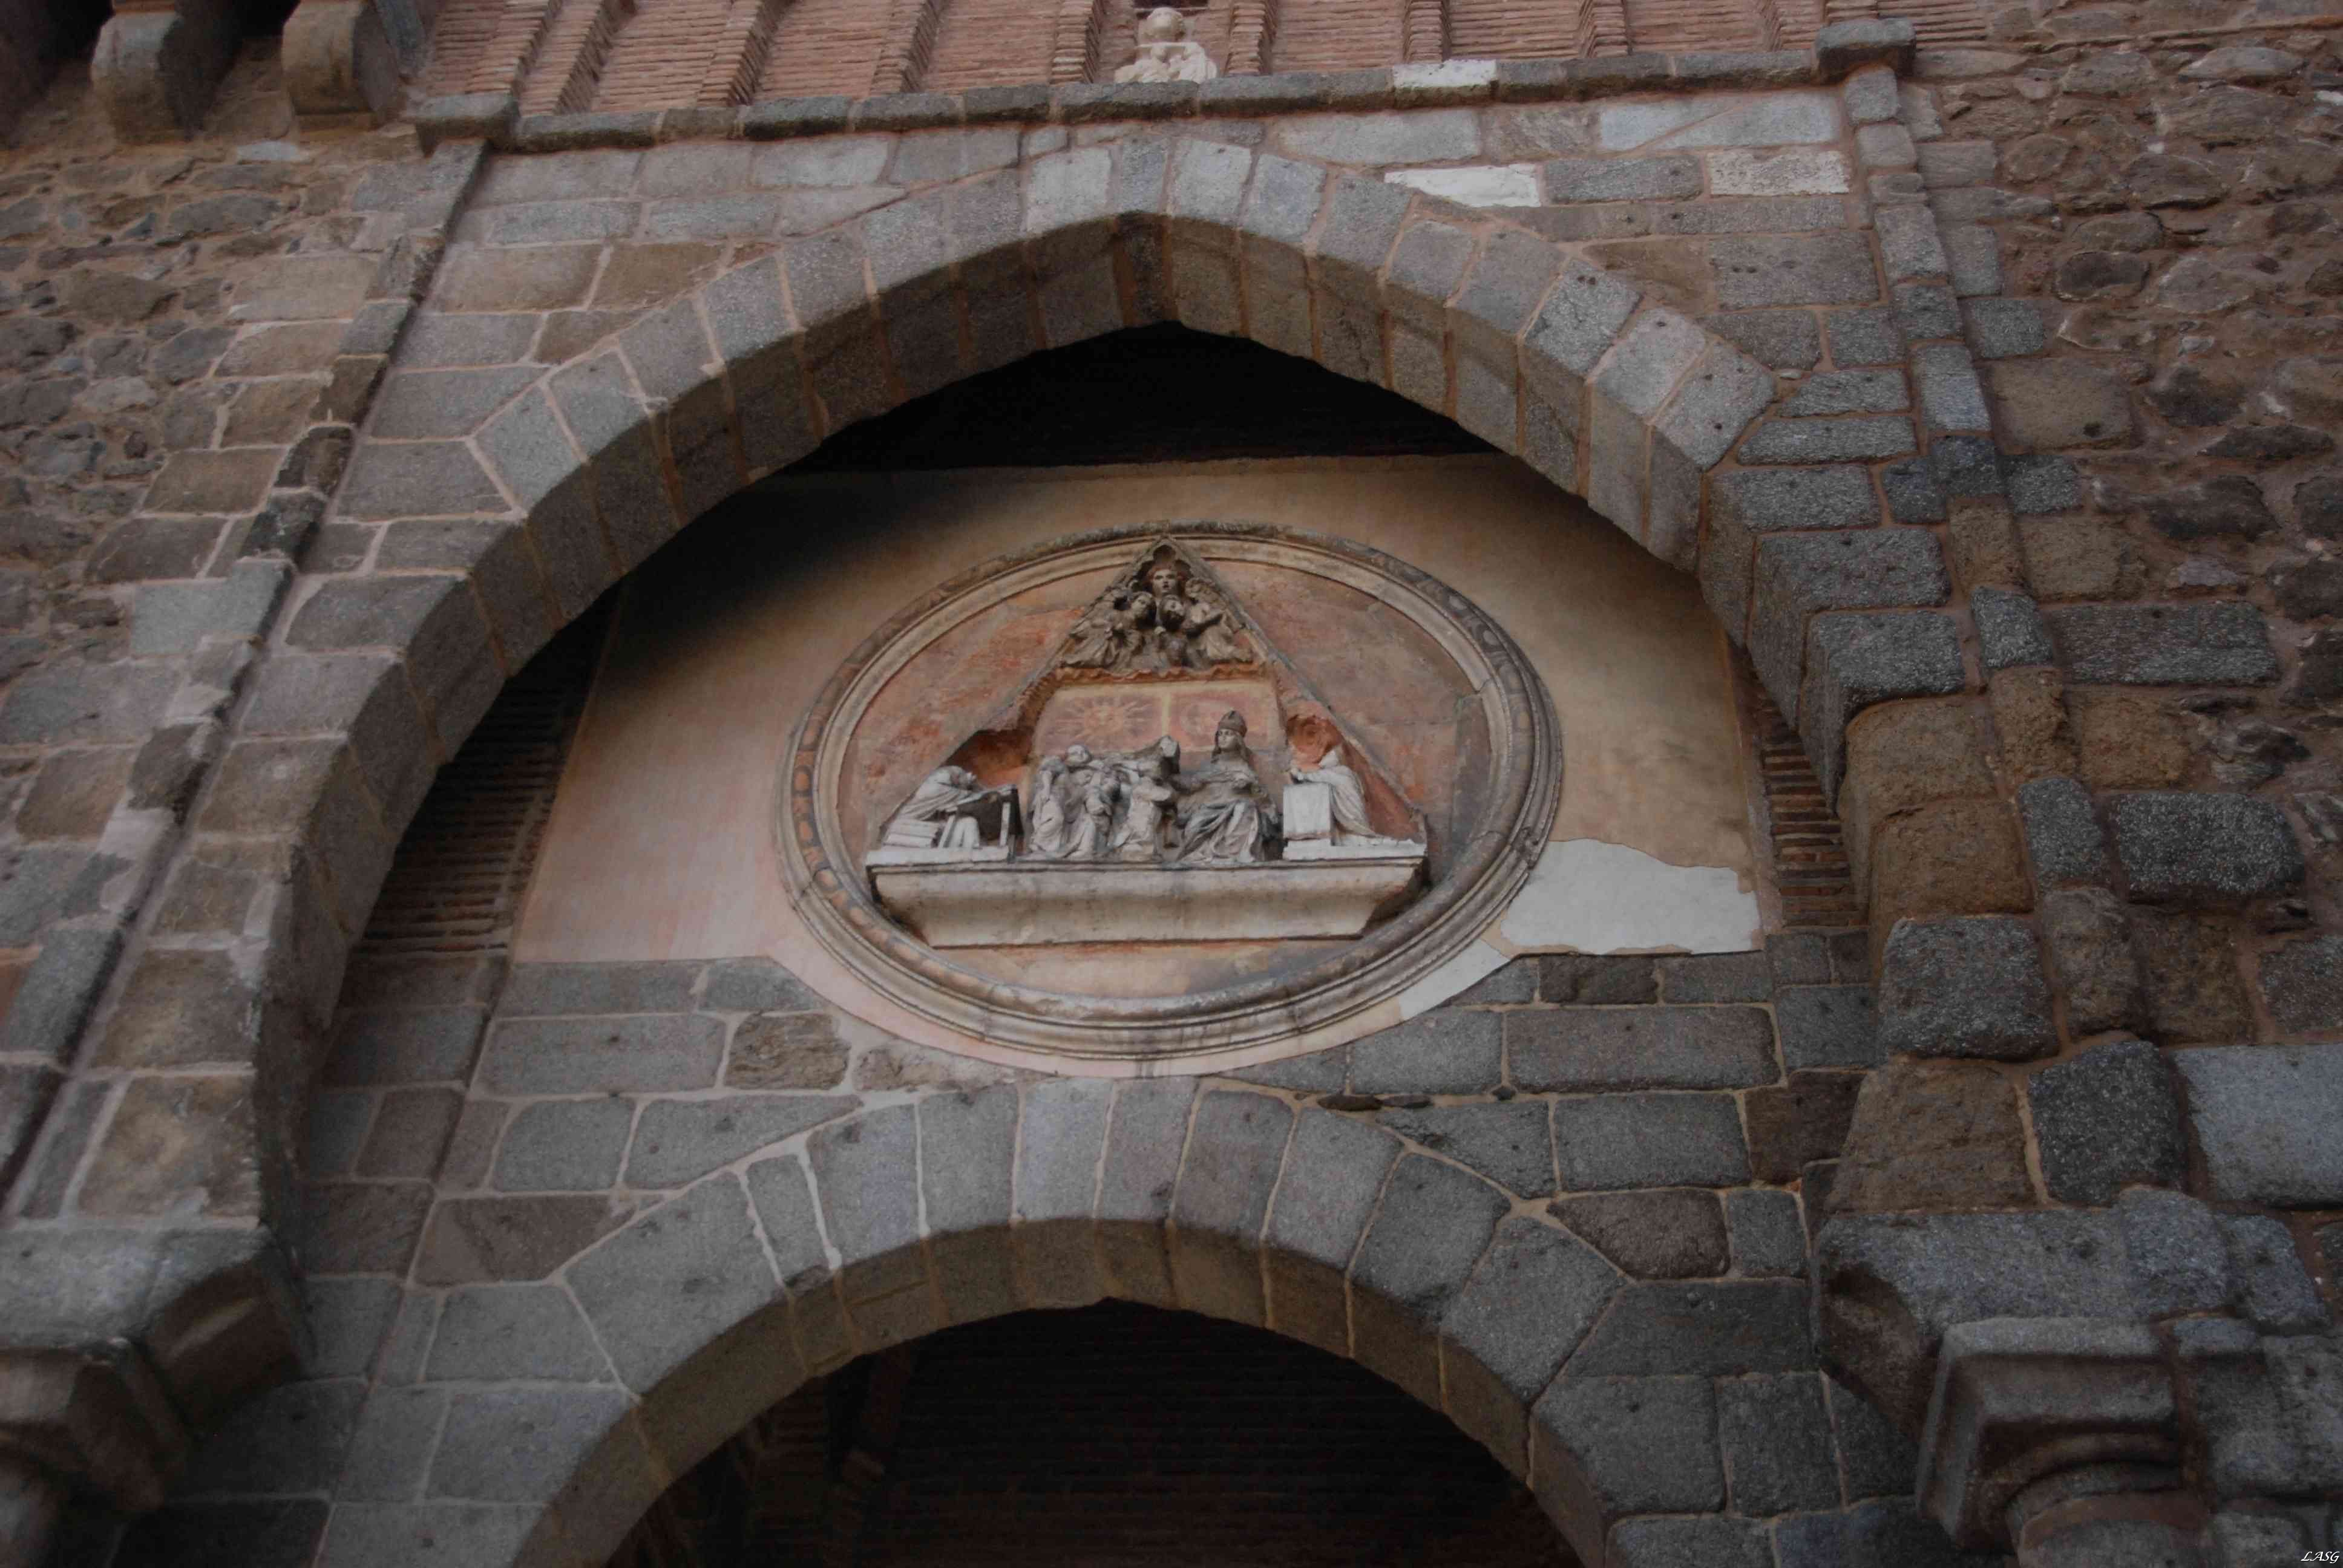 A belső kapu Mária-képe, budéjár keretben